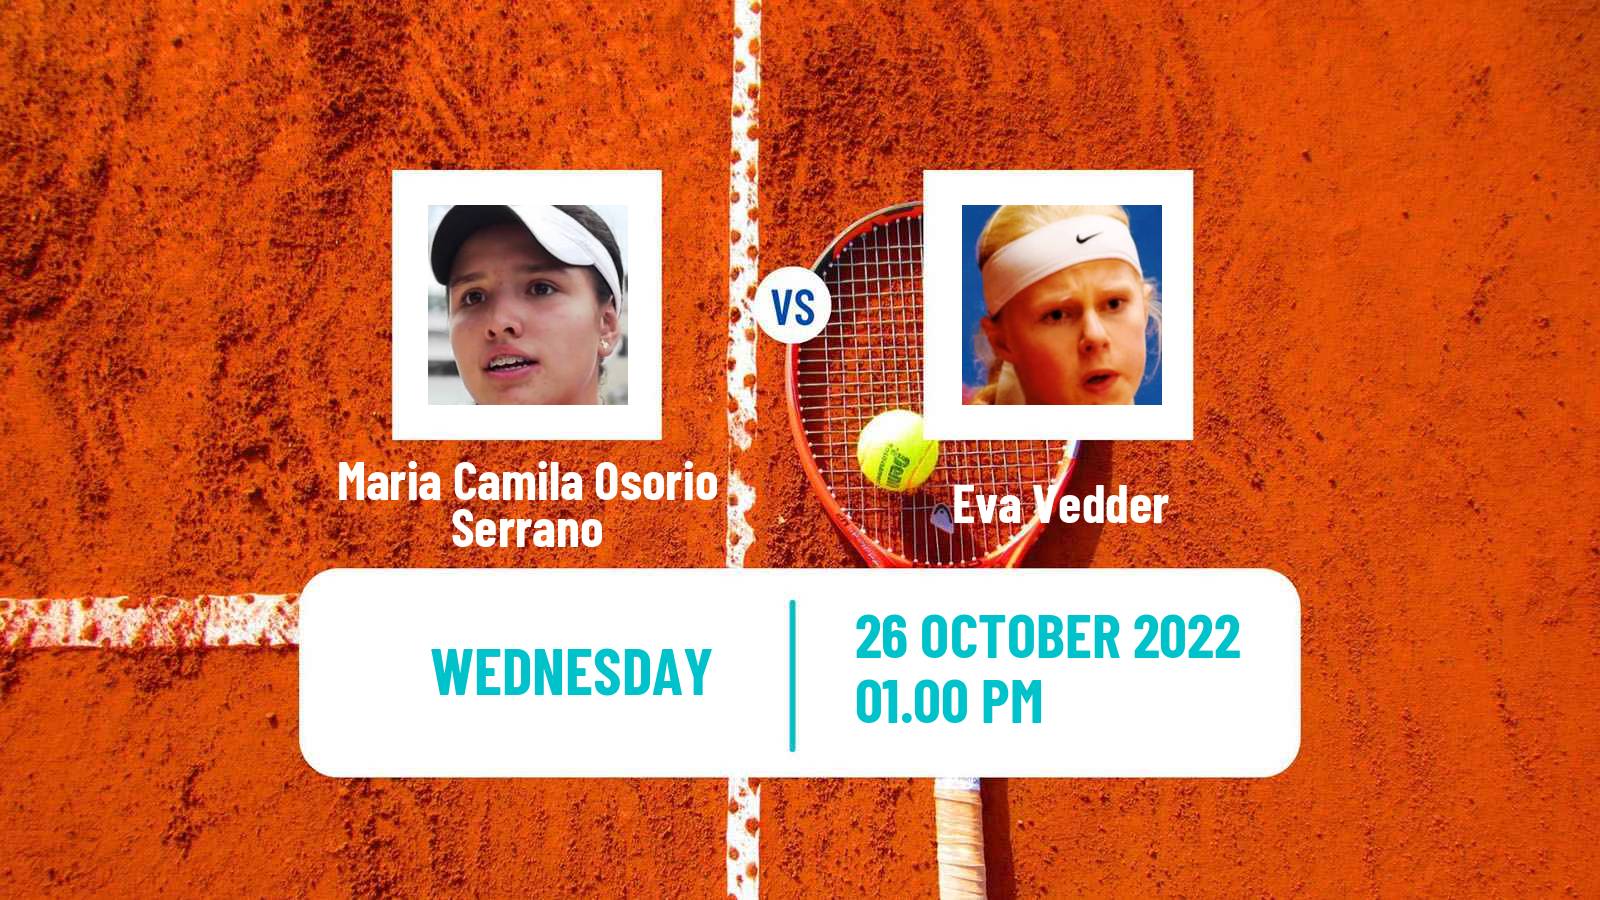 Tennis ATP Challenger Maria Camila Osorio Serrano - Eva Vedder